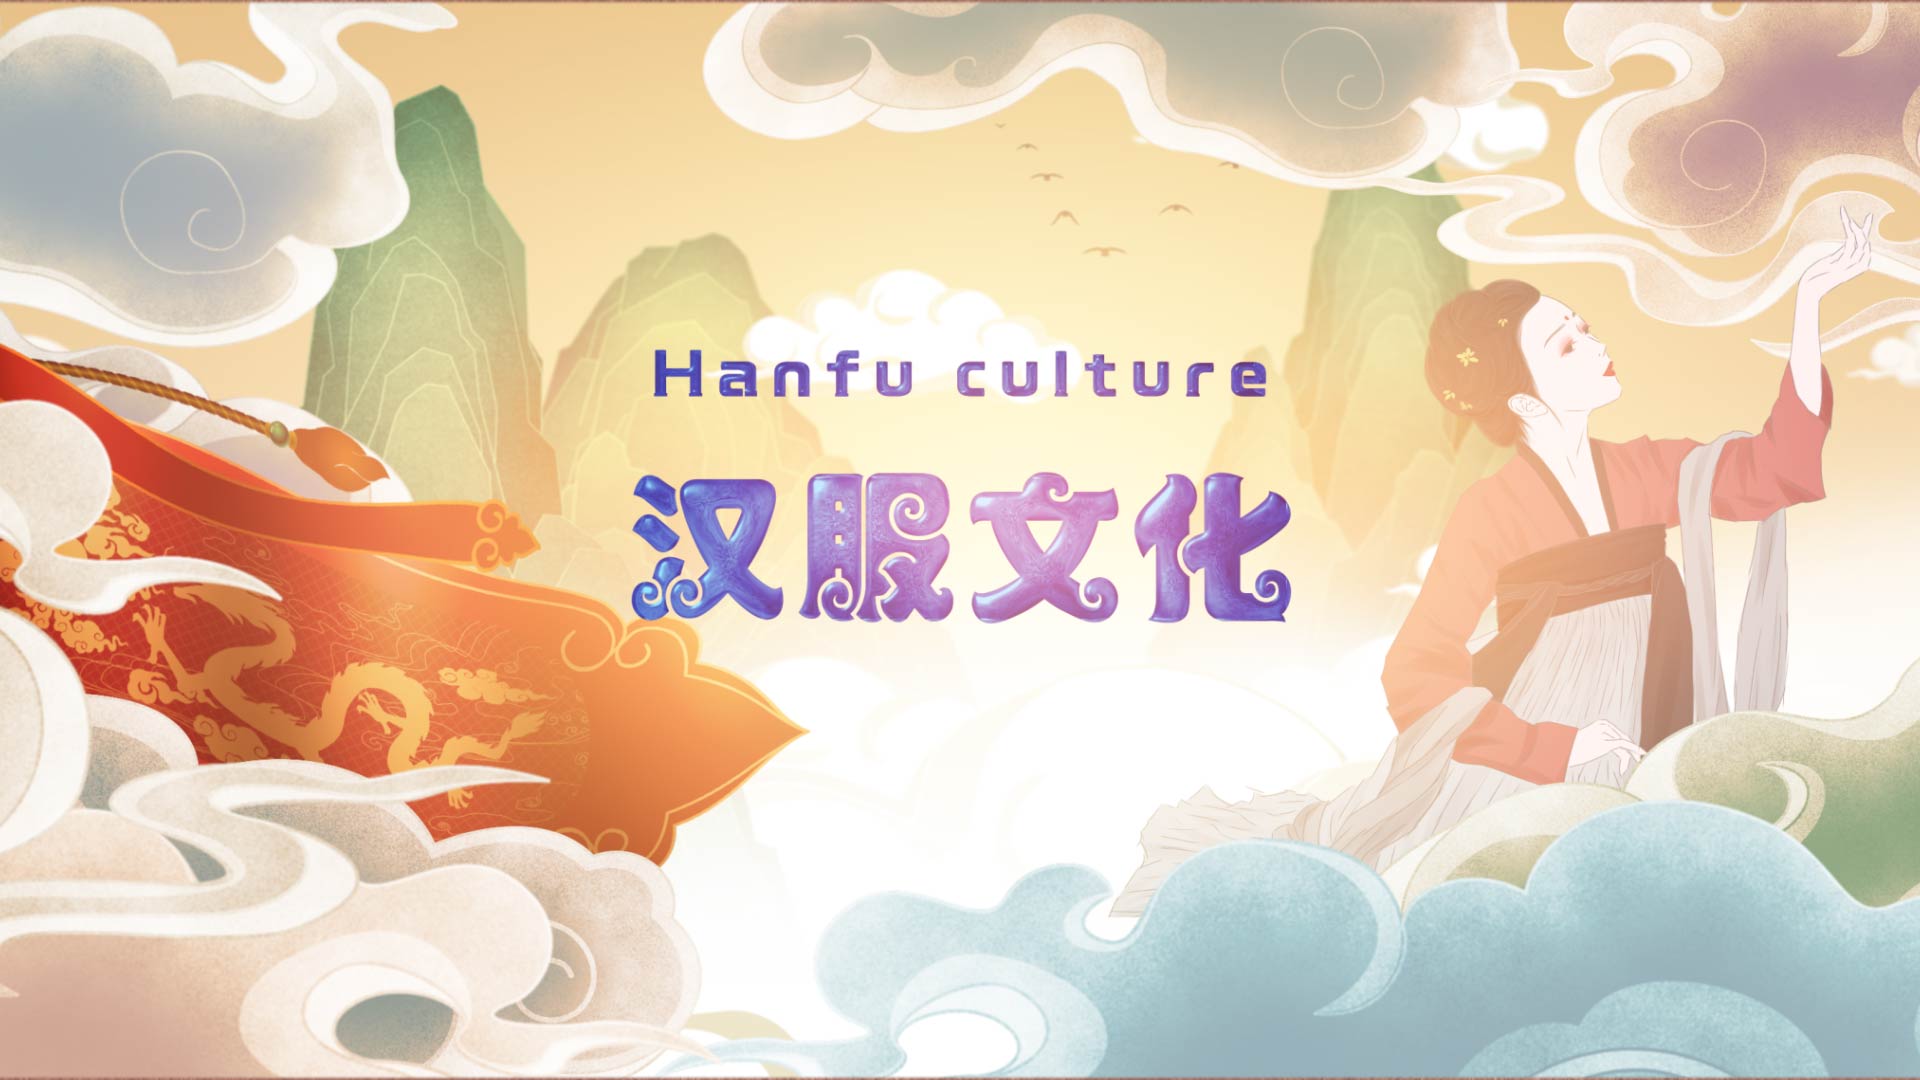 Hanfu culture